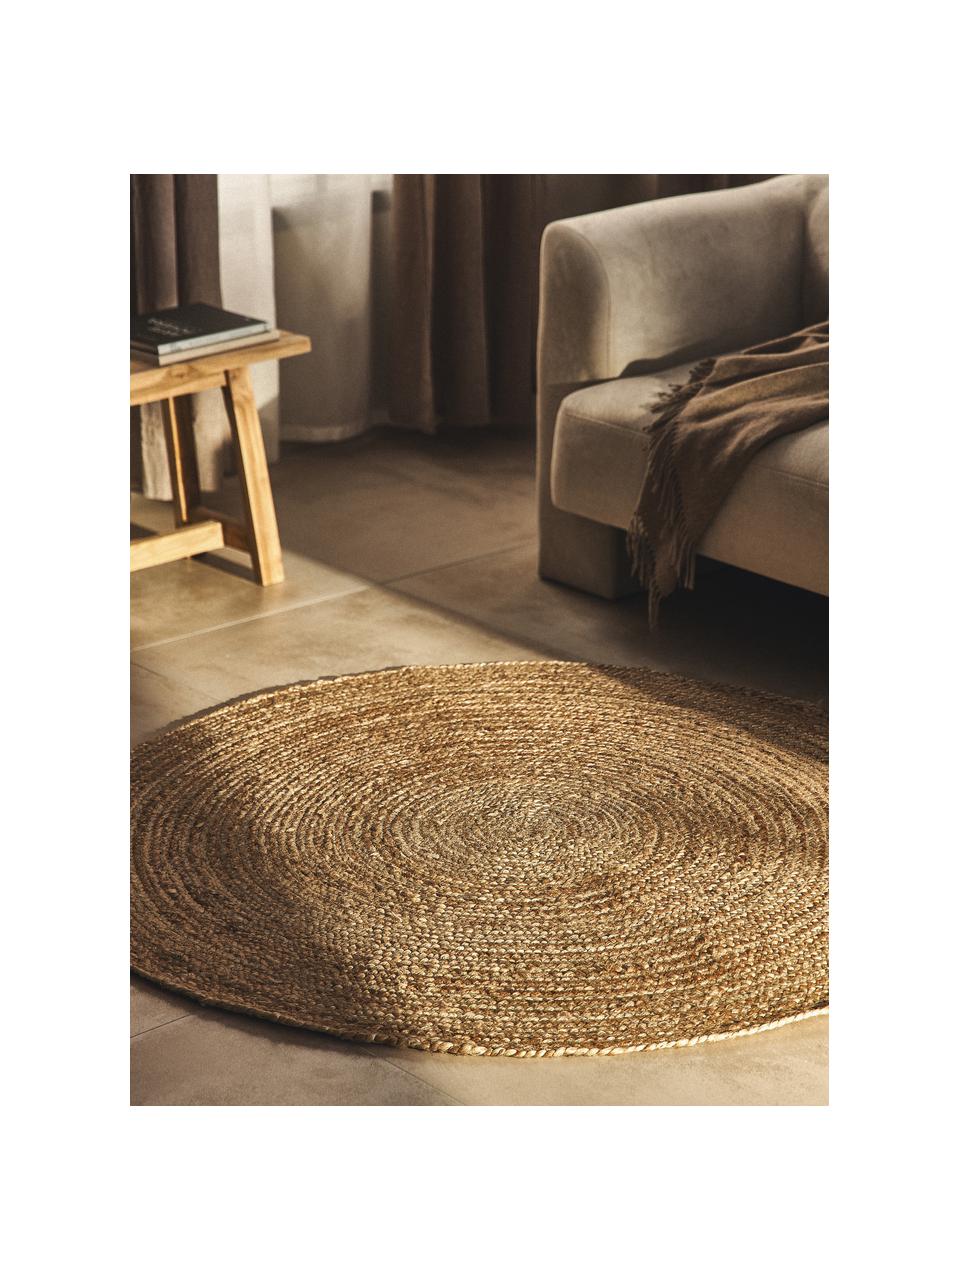 Okrúhly koberec z juty Sharmila, 100 % juta

Pretože jutové koberce sú drsné, sú menej vhodné na priamy kontakt s pokožkou, Hnedá, Ø 100 cm (veľkosť XS)